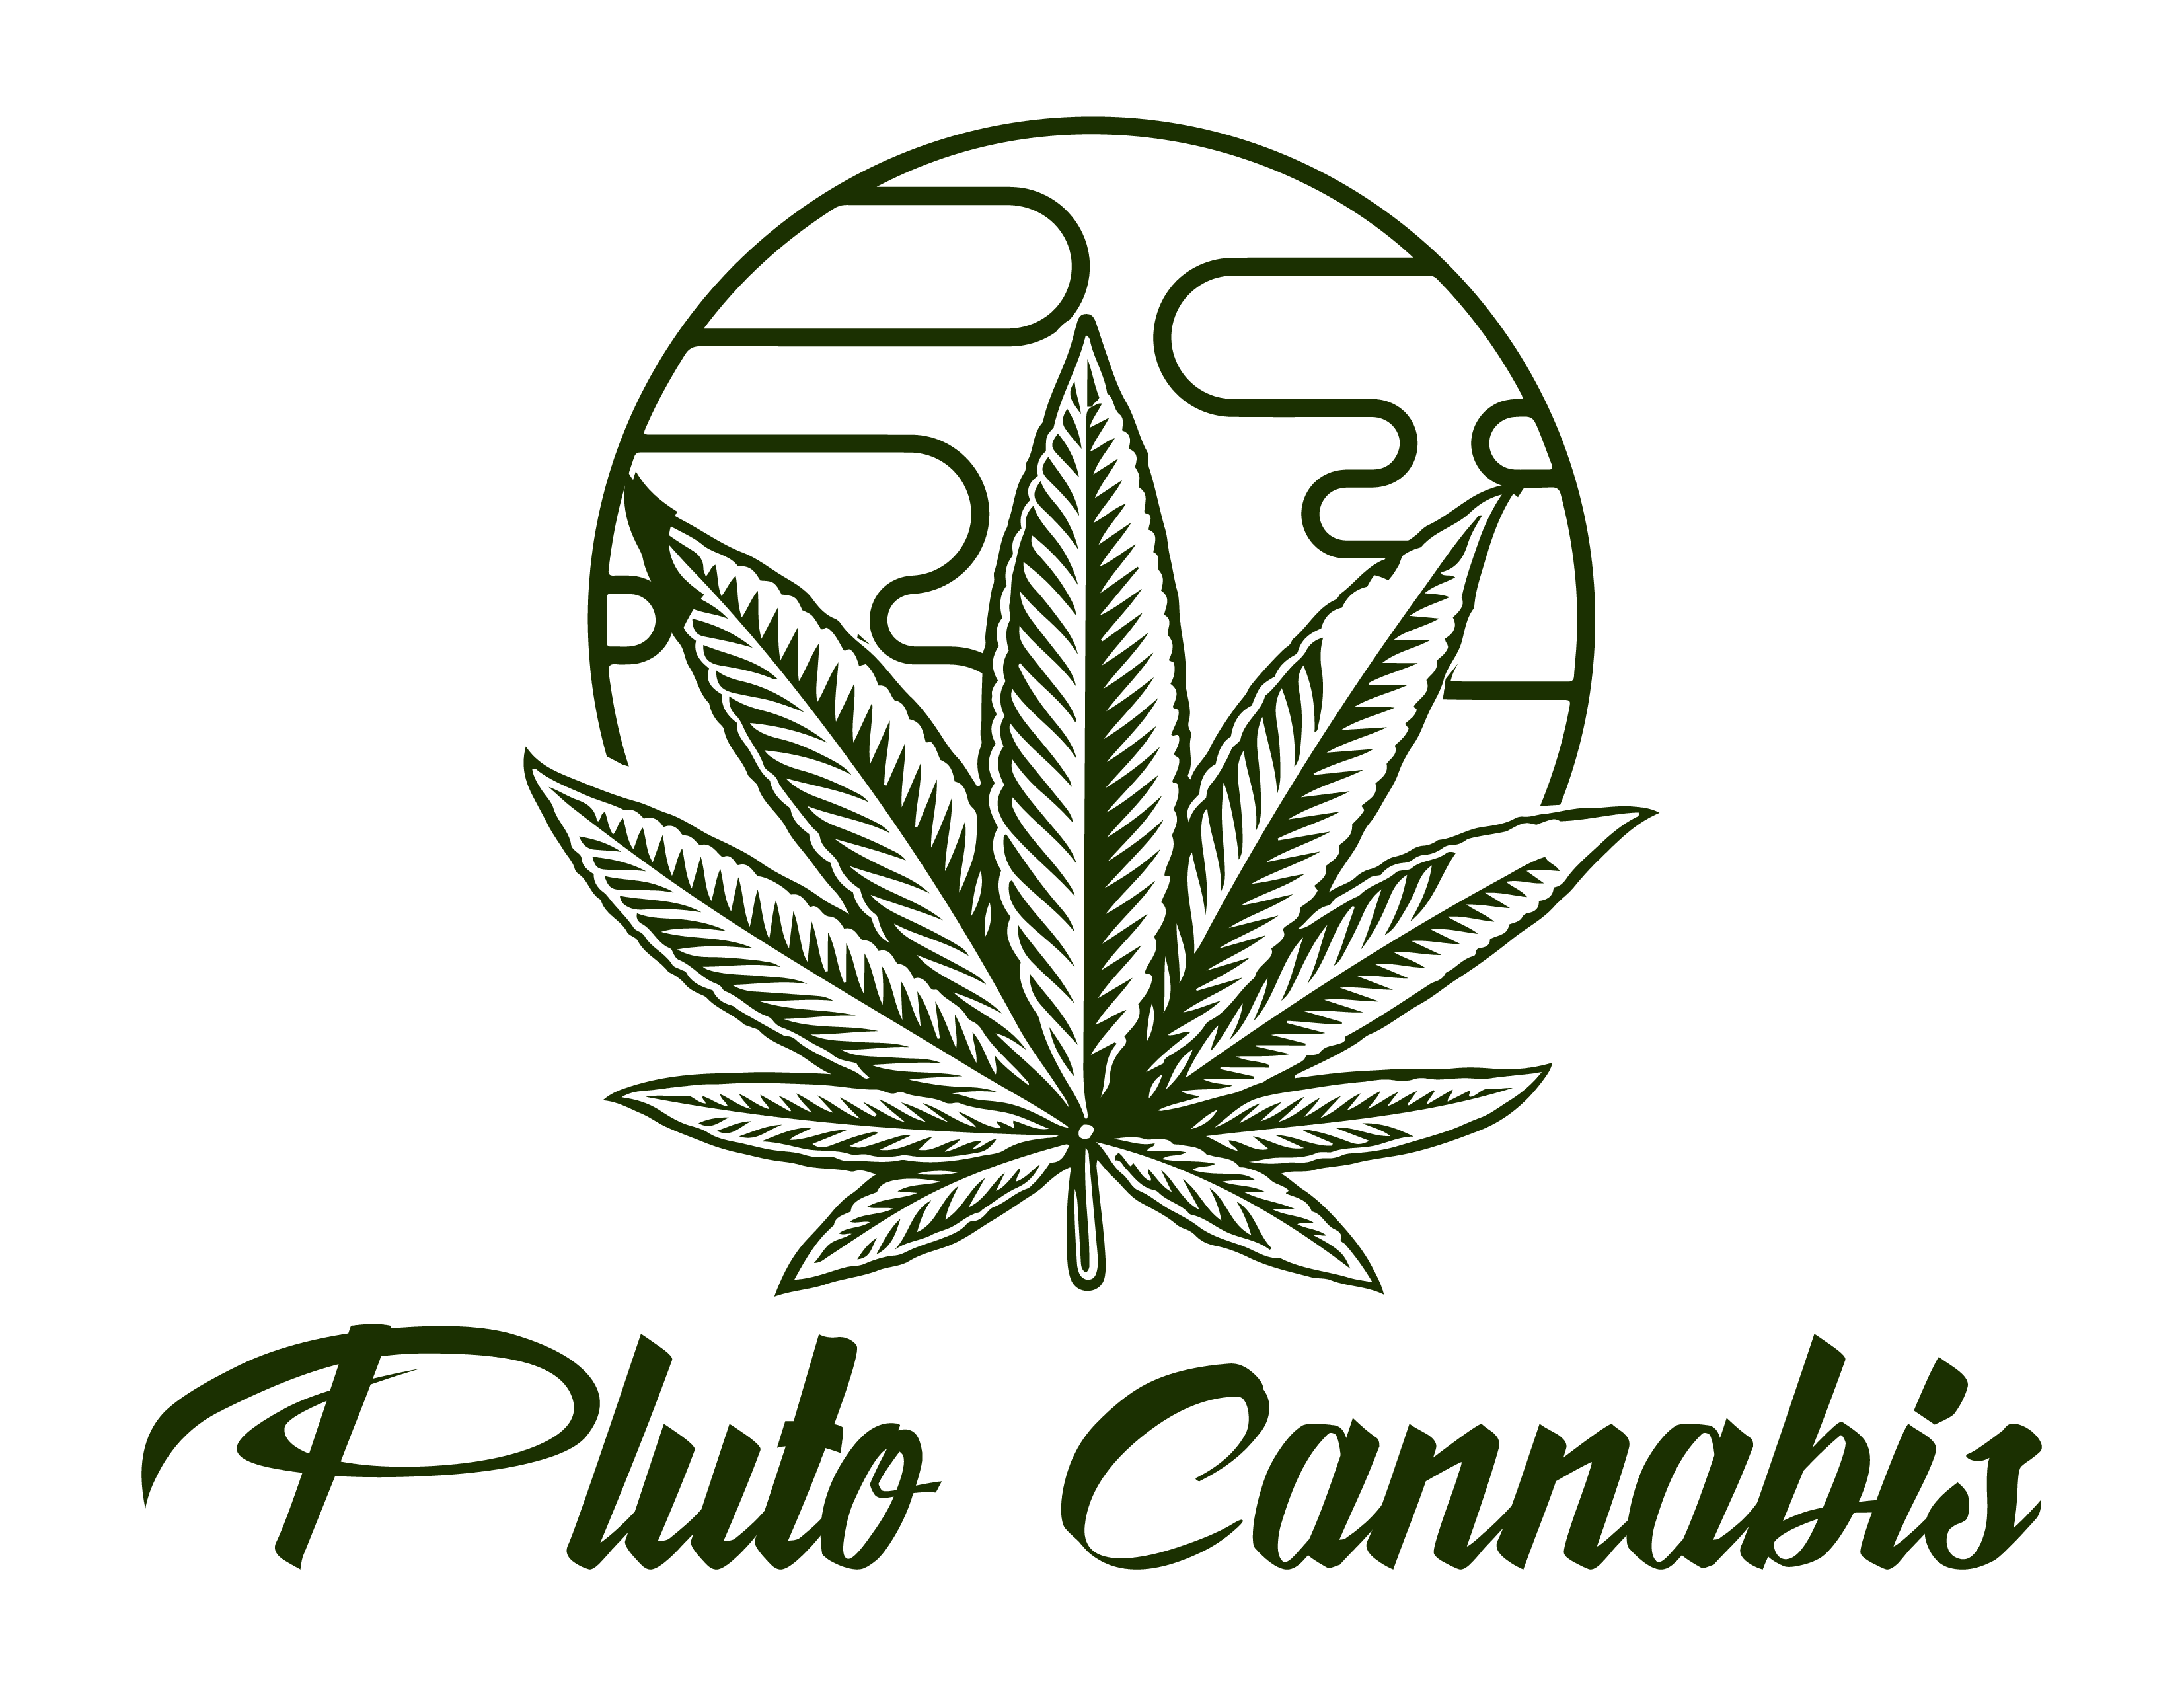 Pluto Cannabis